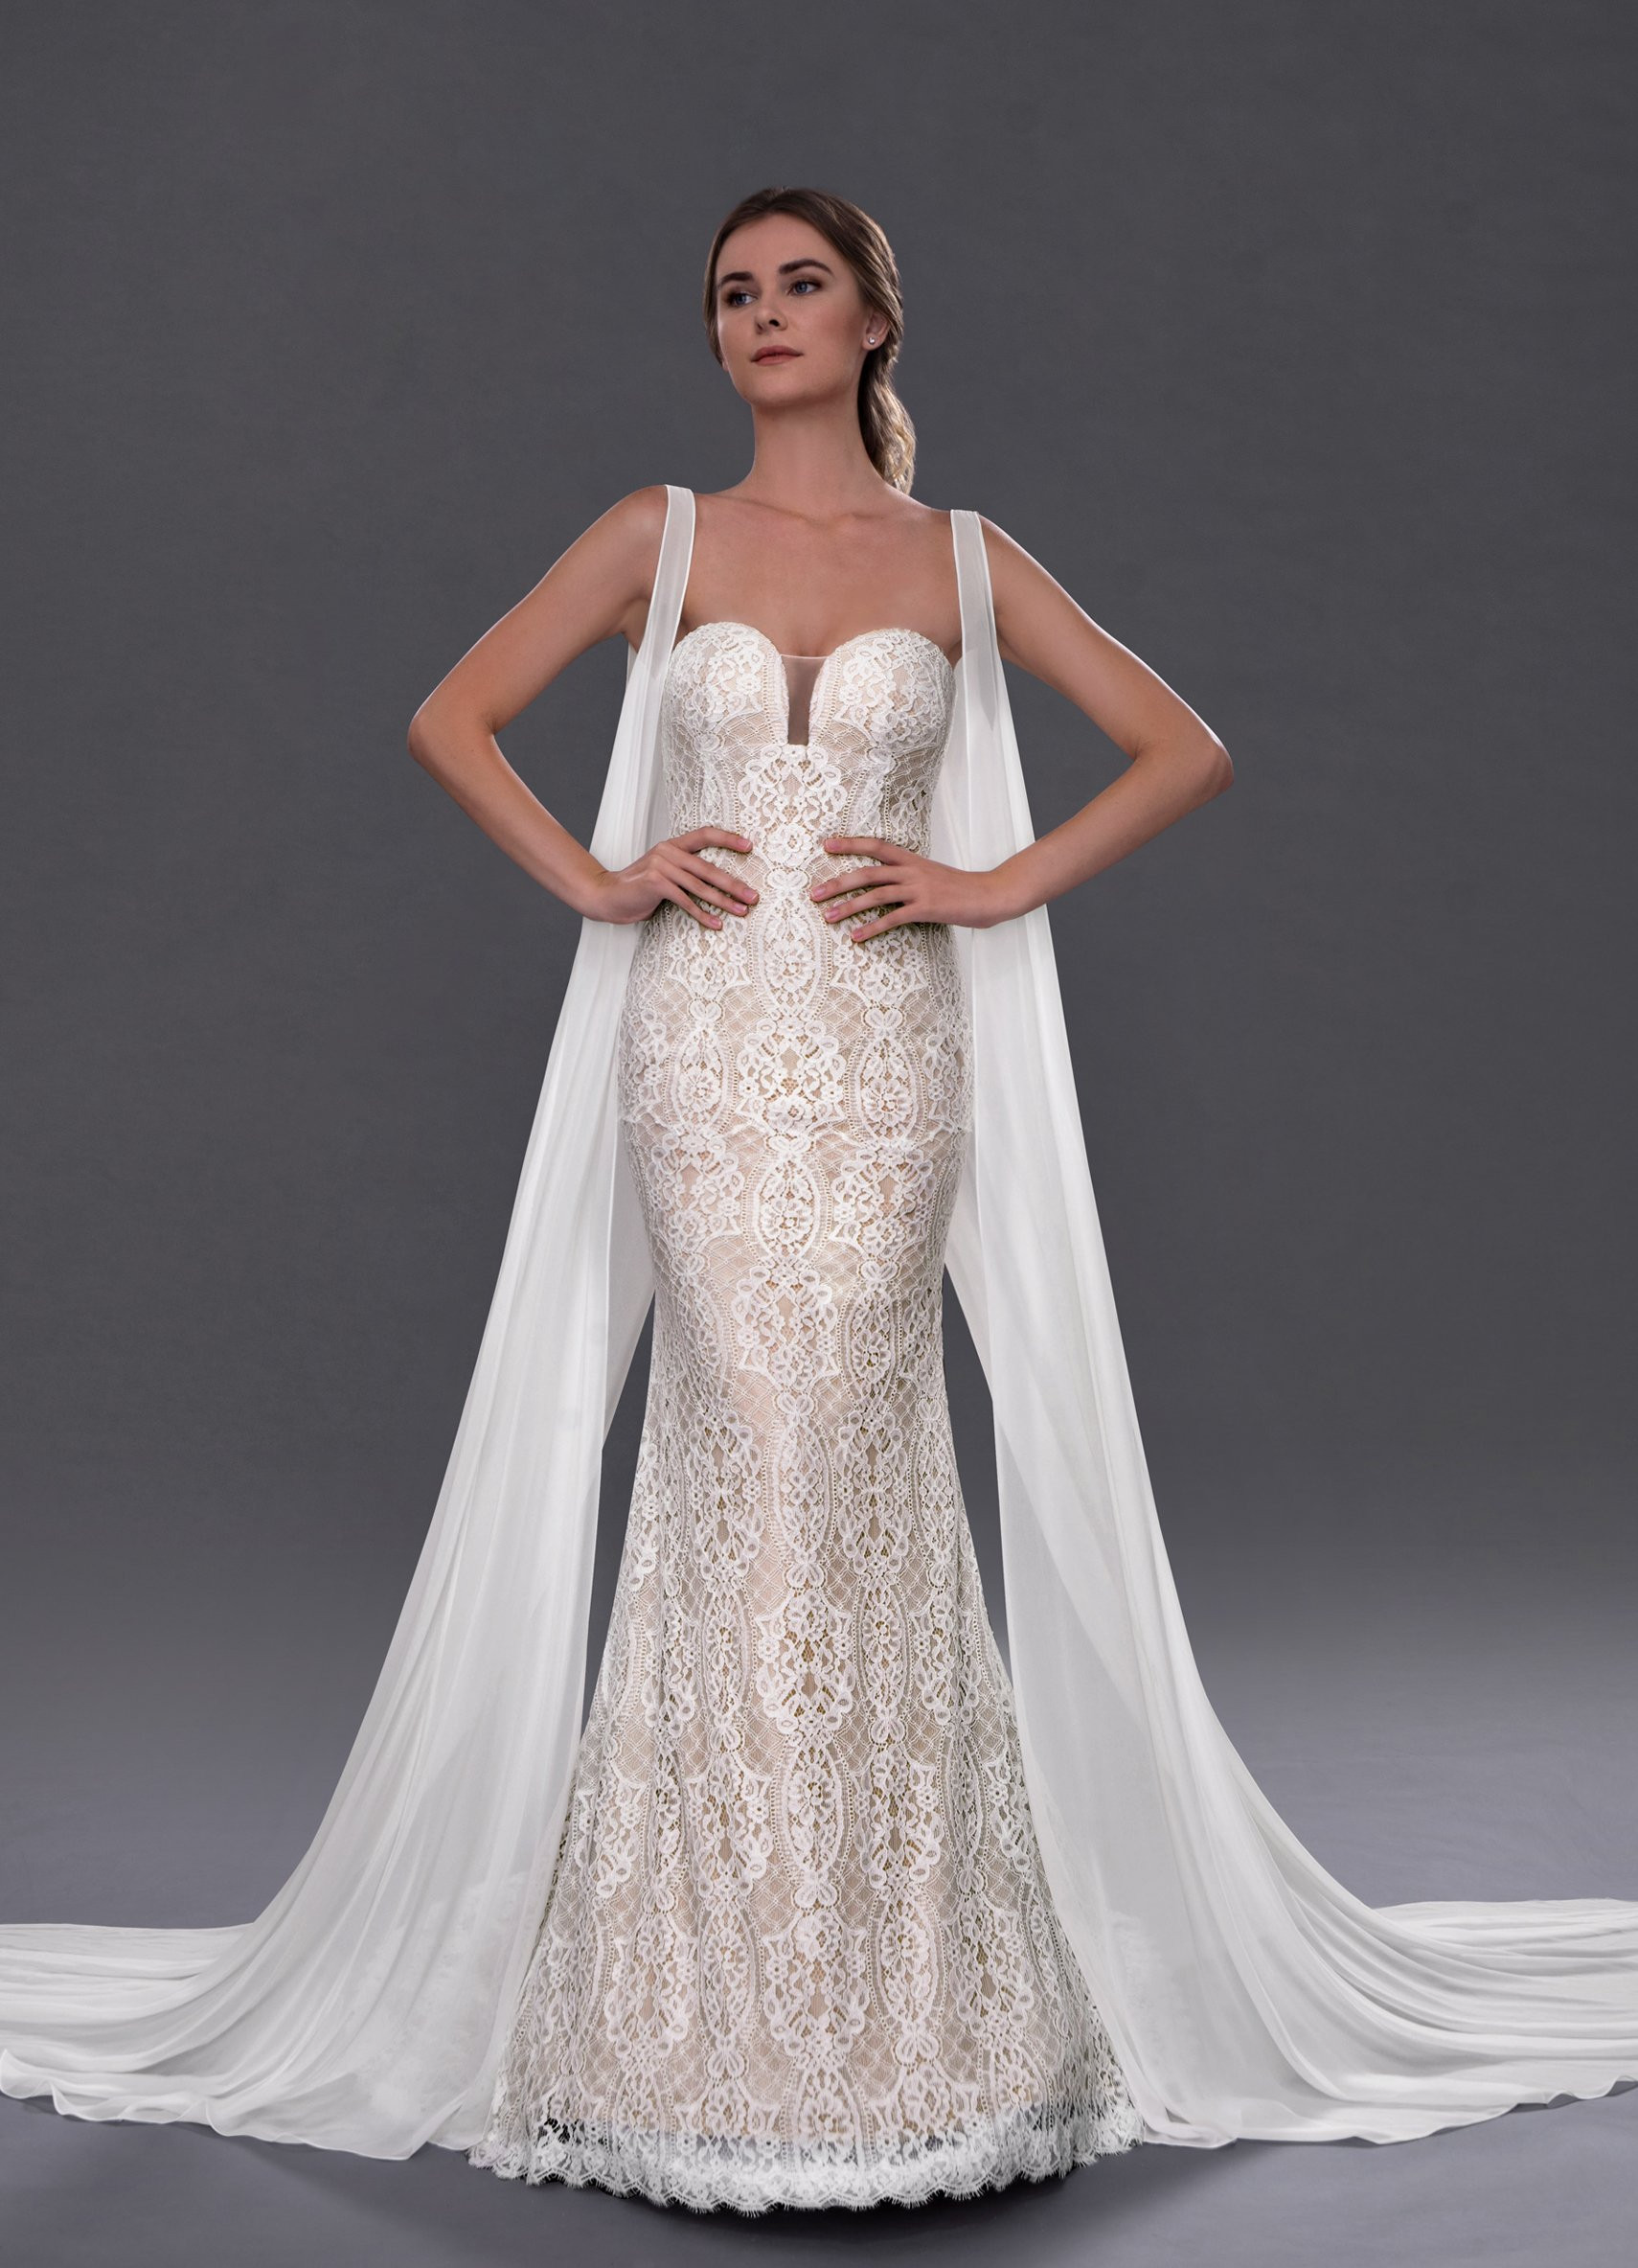 Best Wedding Dresses 2020
 2020 Wedding Dress Trends From an Expert Bridal Designer